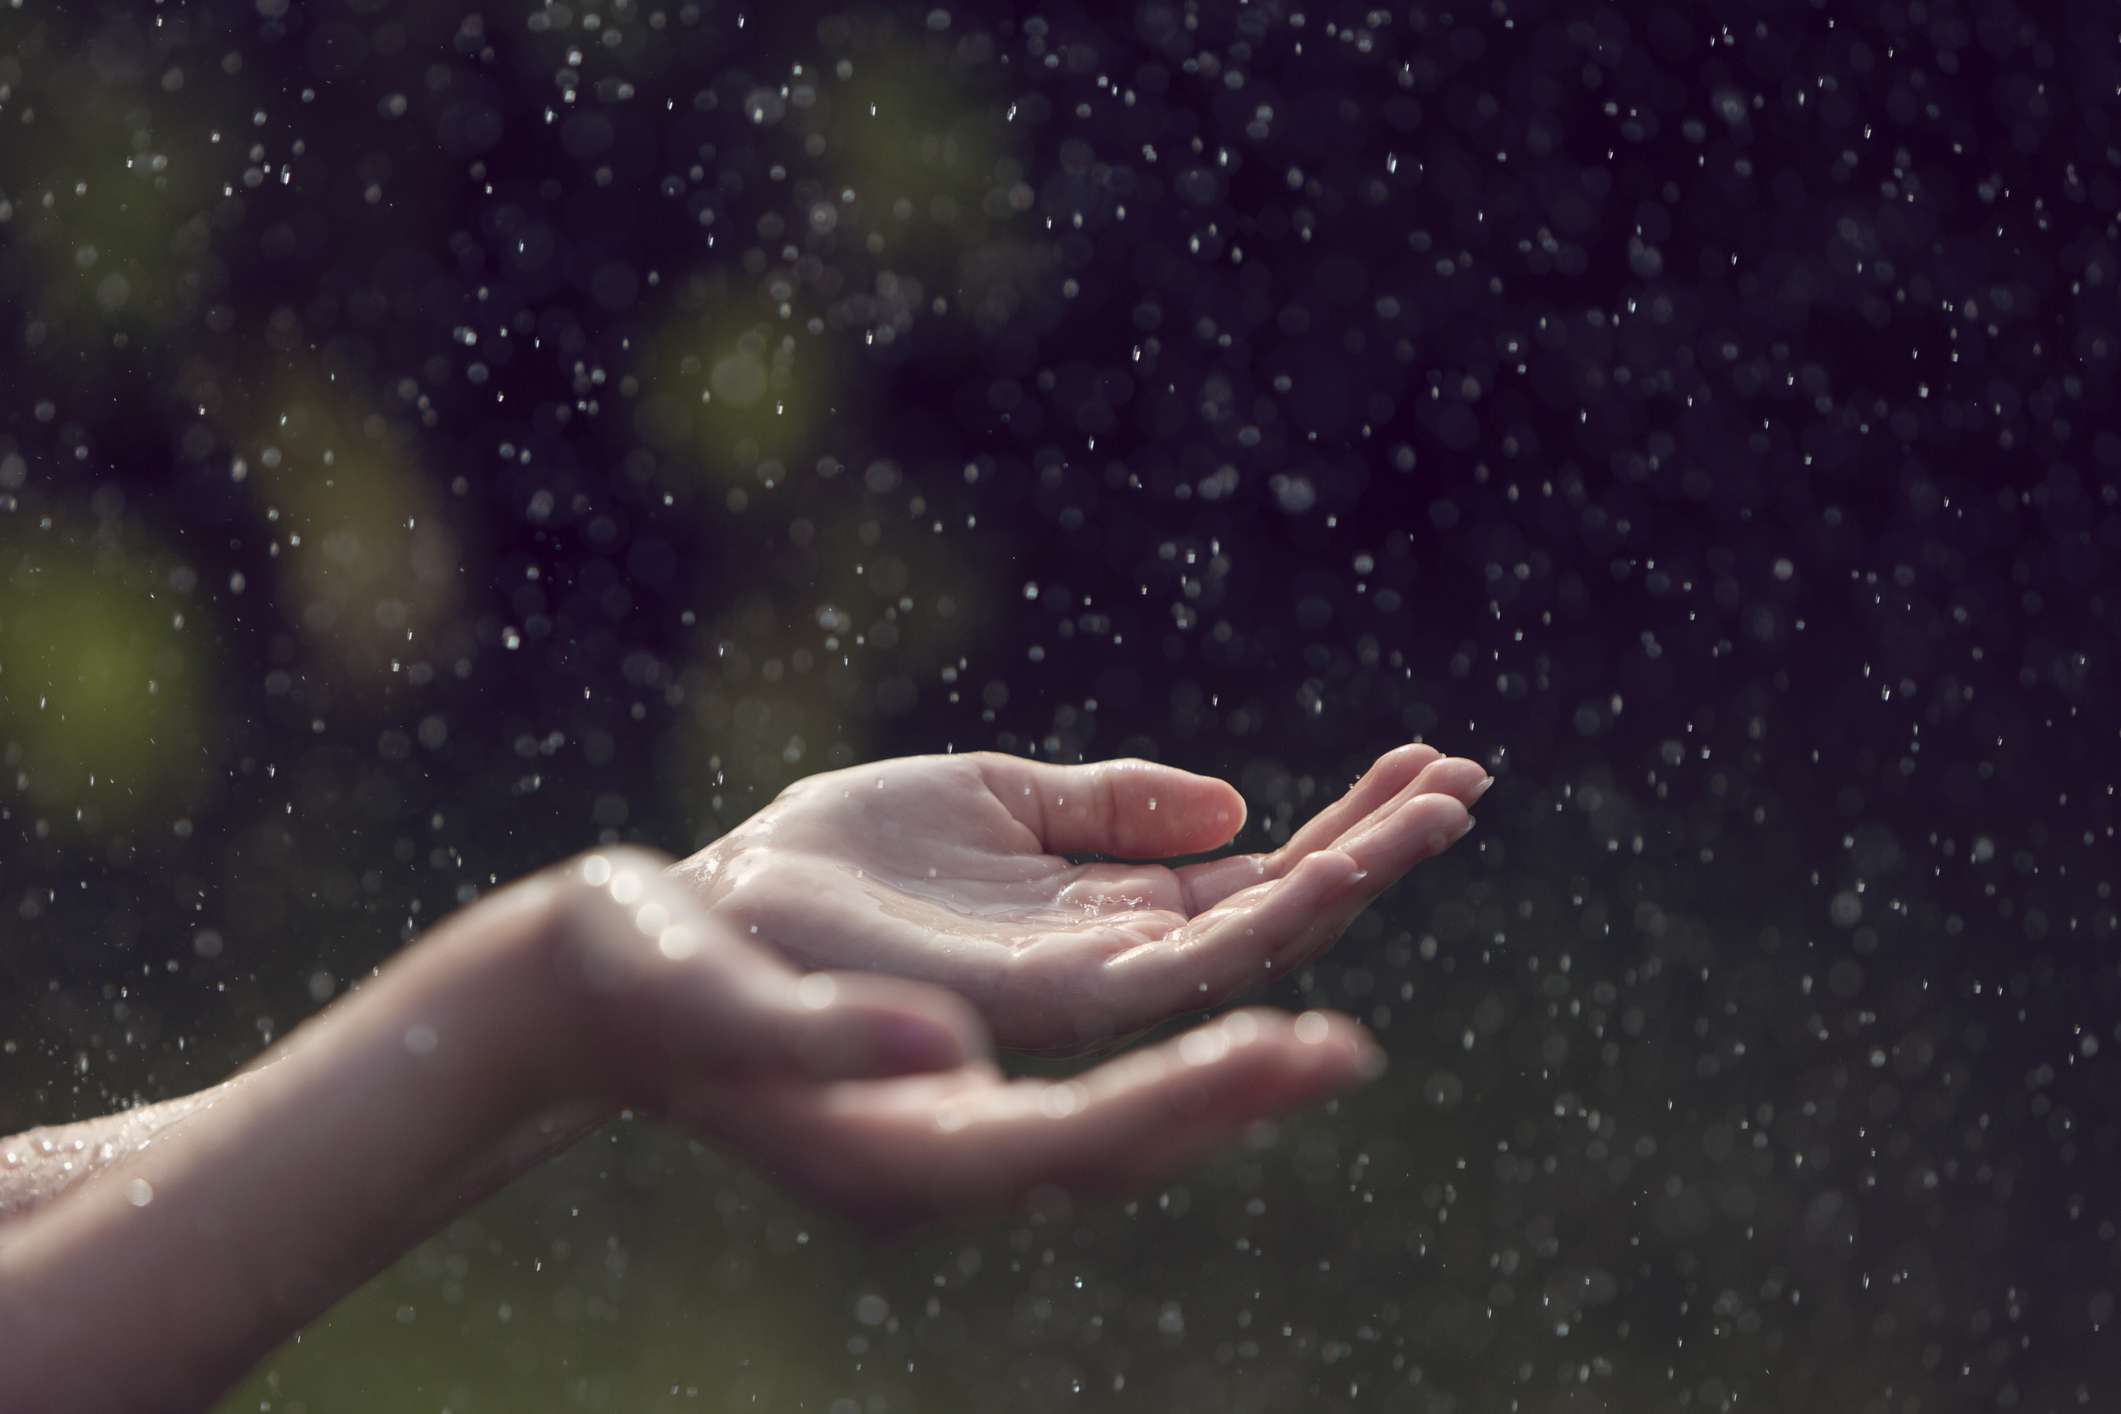 Primer plano de unas manos extendidas recogiendo gotas de lluvia